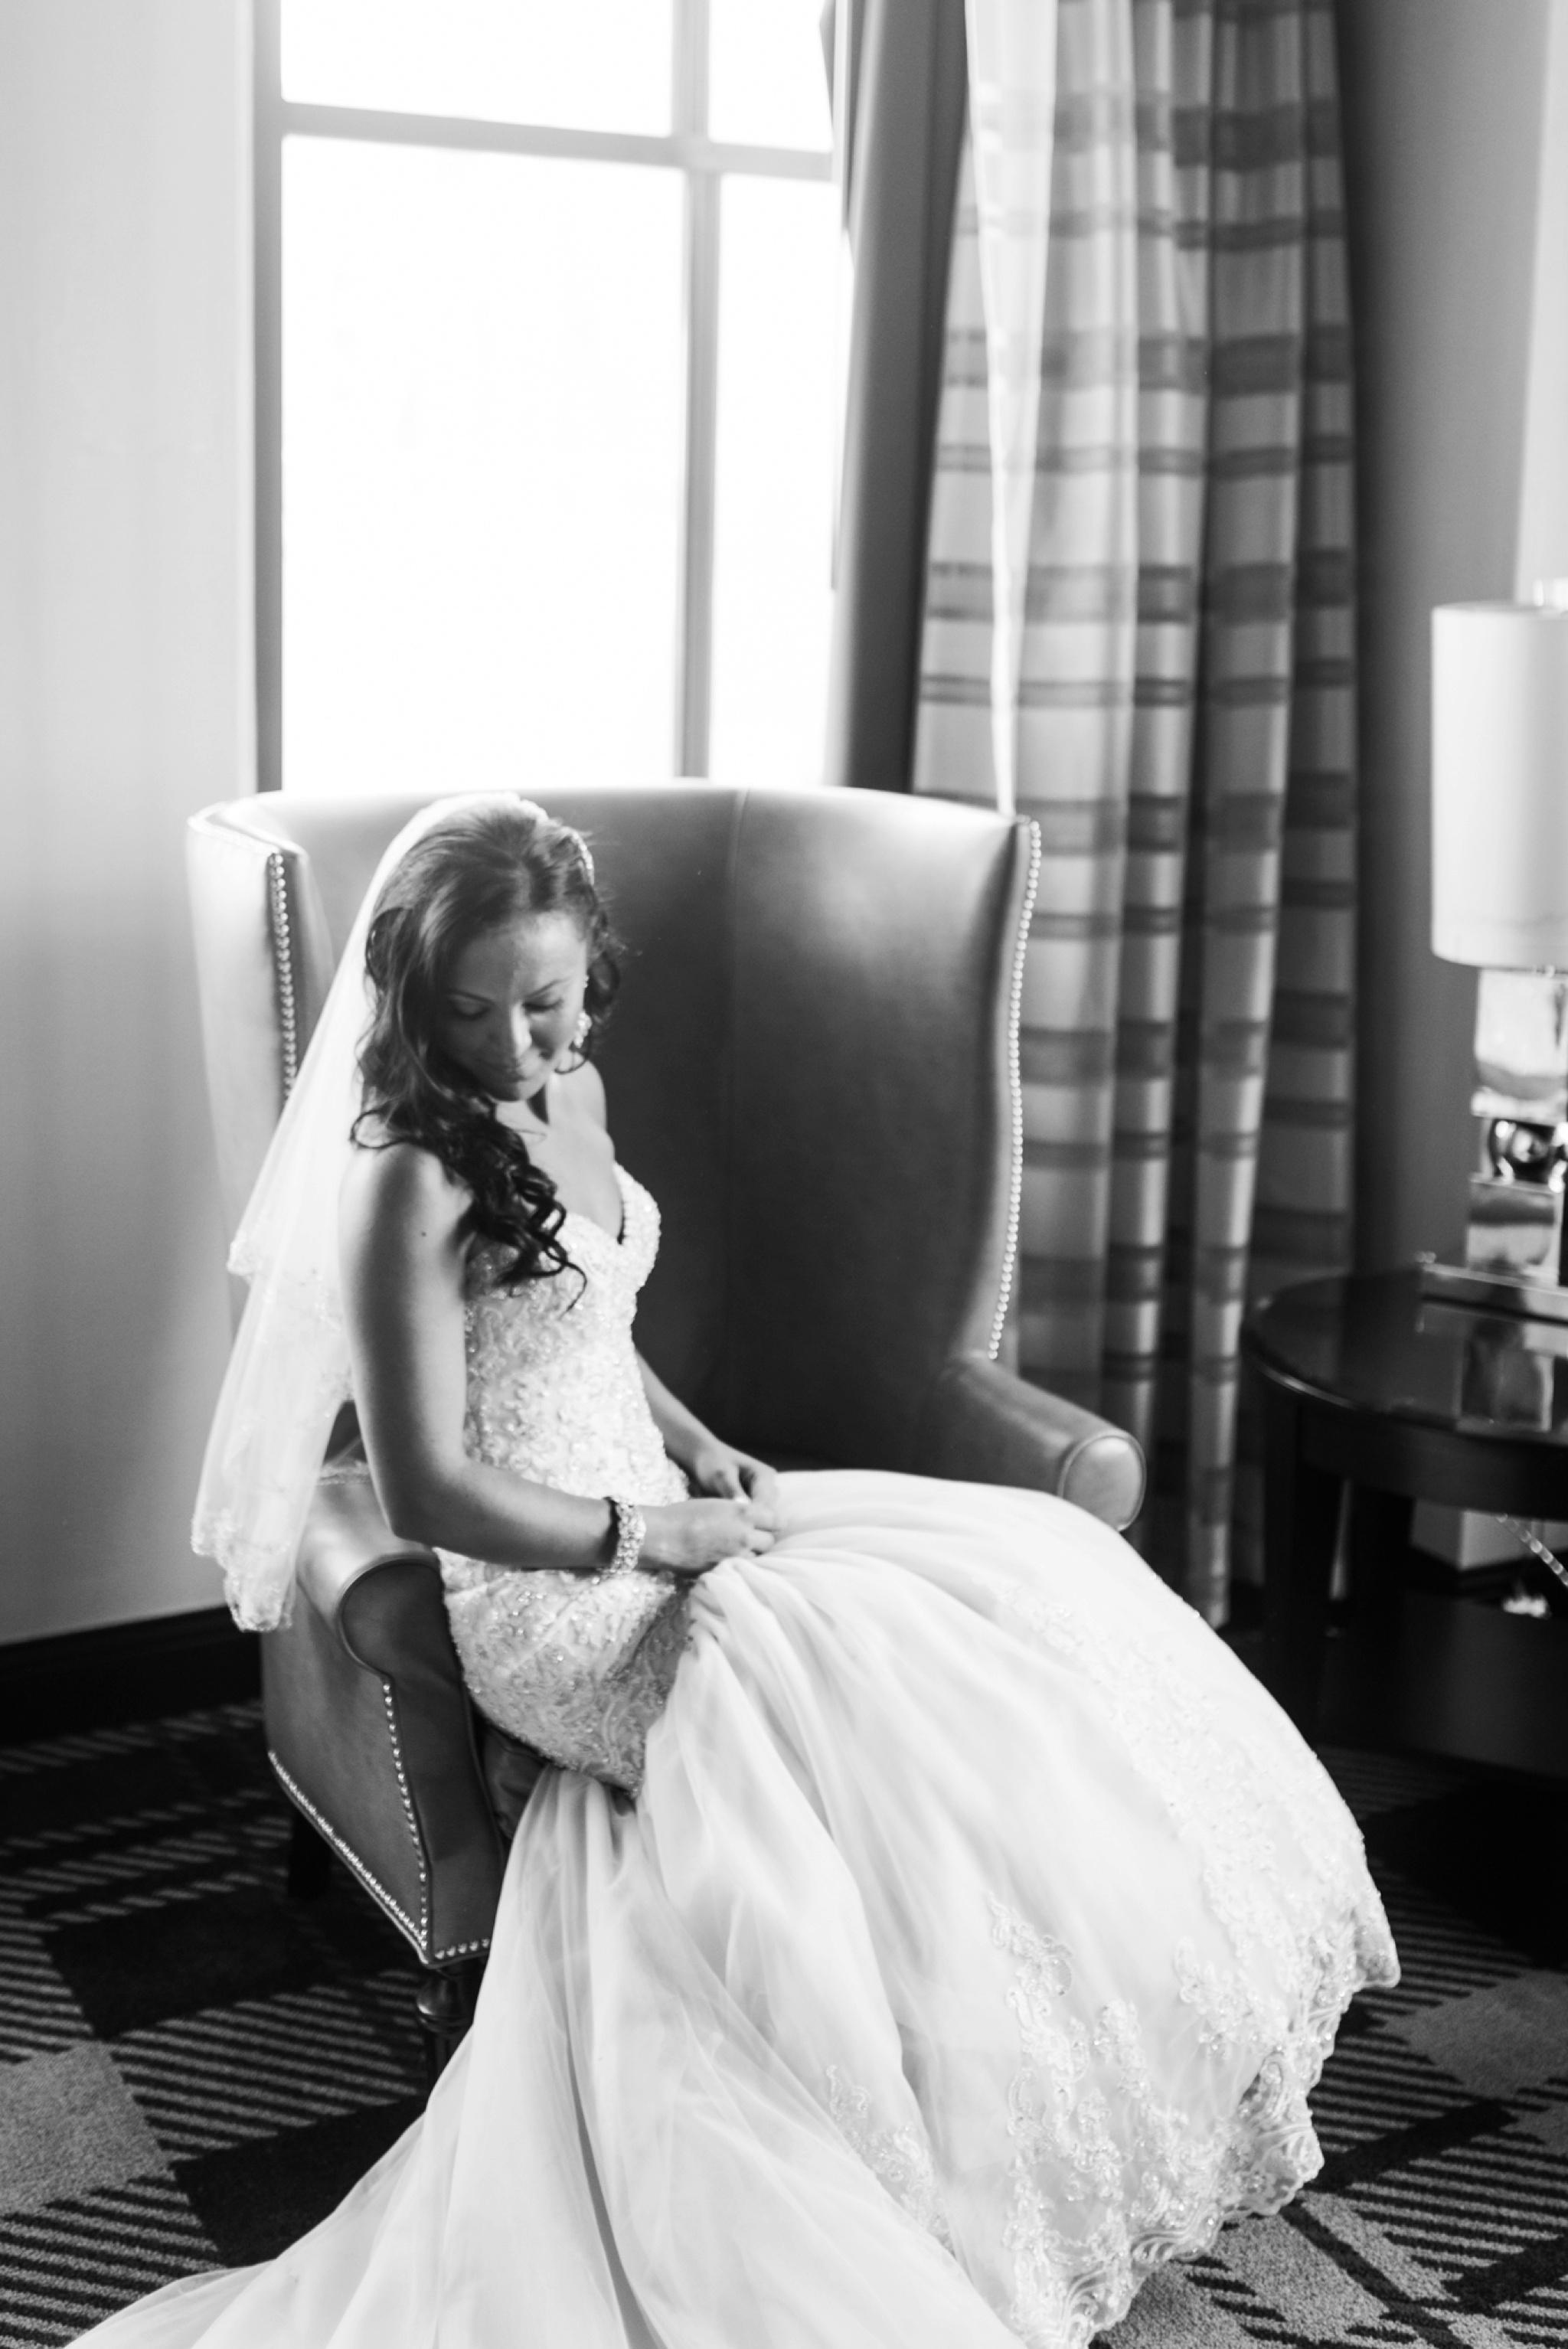 13 - Stephanie + Justin - Crystal Tea Room - Philadelphia Wedding Photographer - Alison Dunn Photography photo